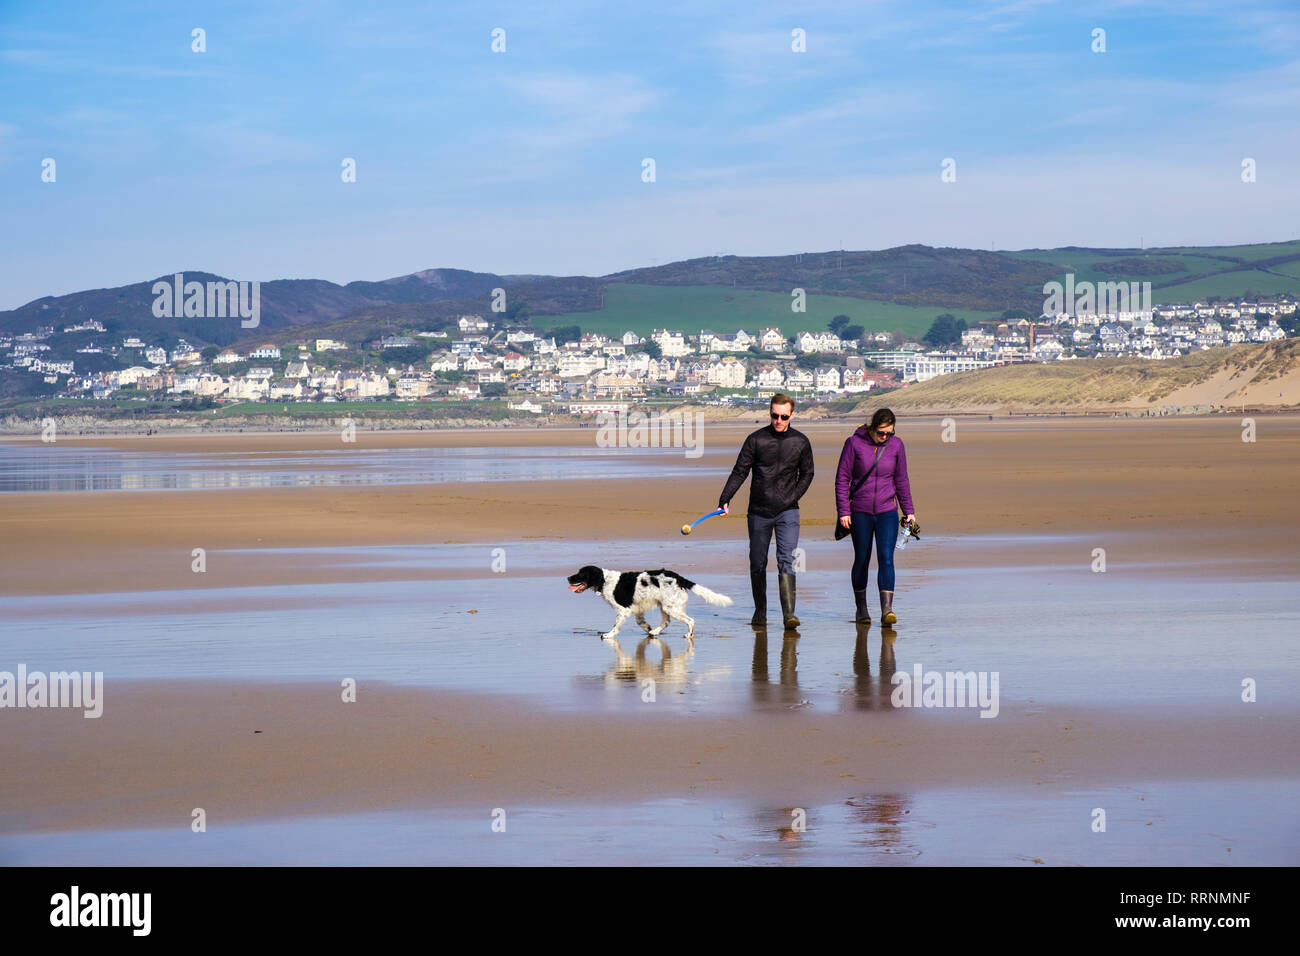 Una coppia millenaria di persone che camminano un cane Springer Spaniel sulla tranquilla spiaggia sabbiosa con bassa marea in inverno. Woolacombe nord Devon Inghilterra Regno Unito Gran Bretagna Foto Stock